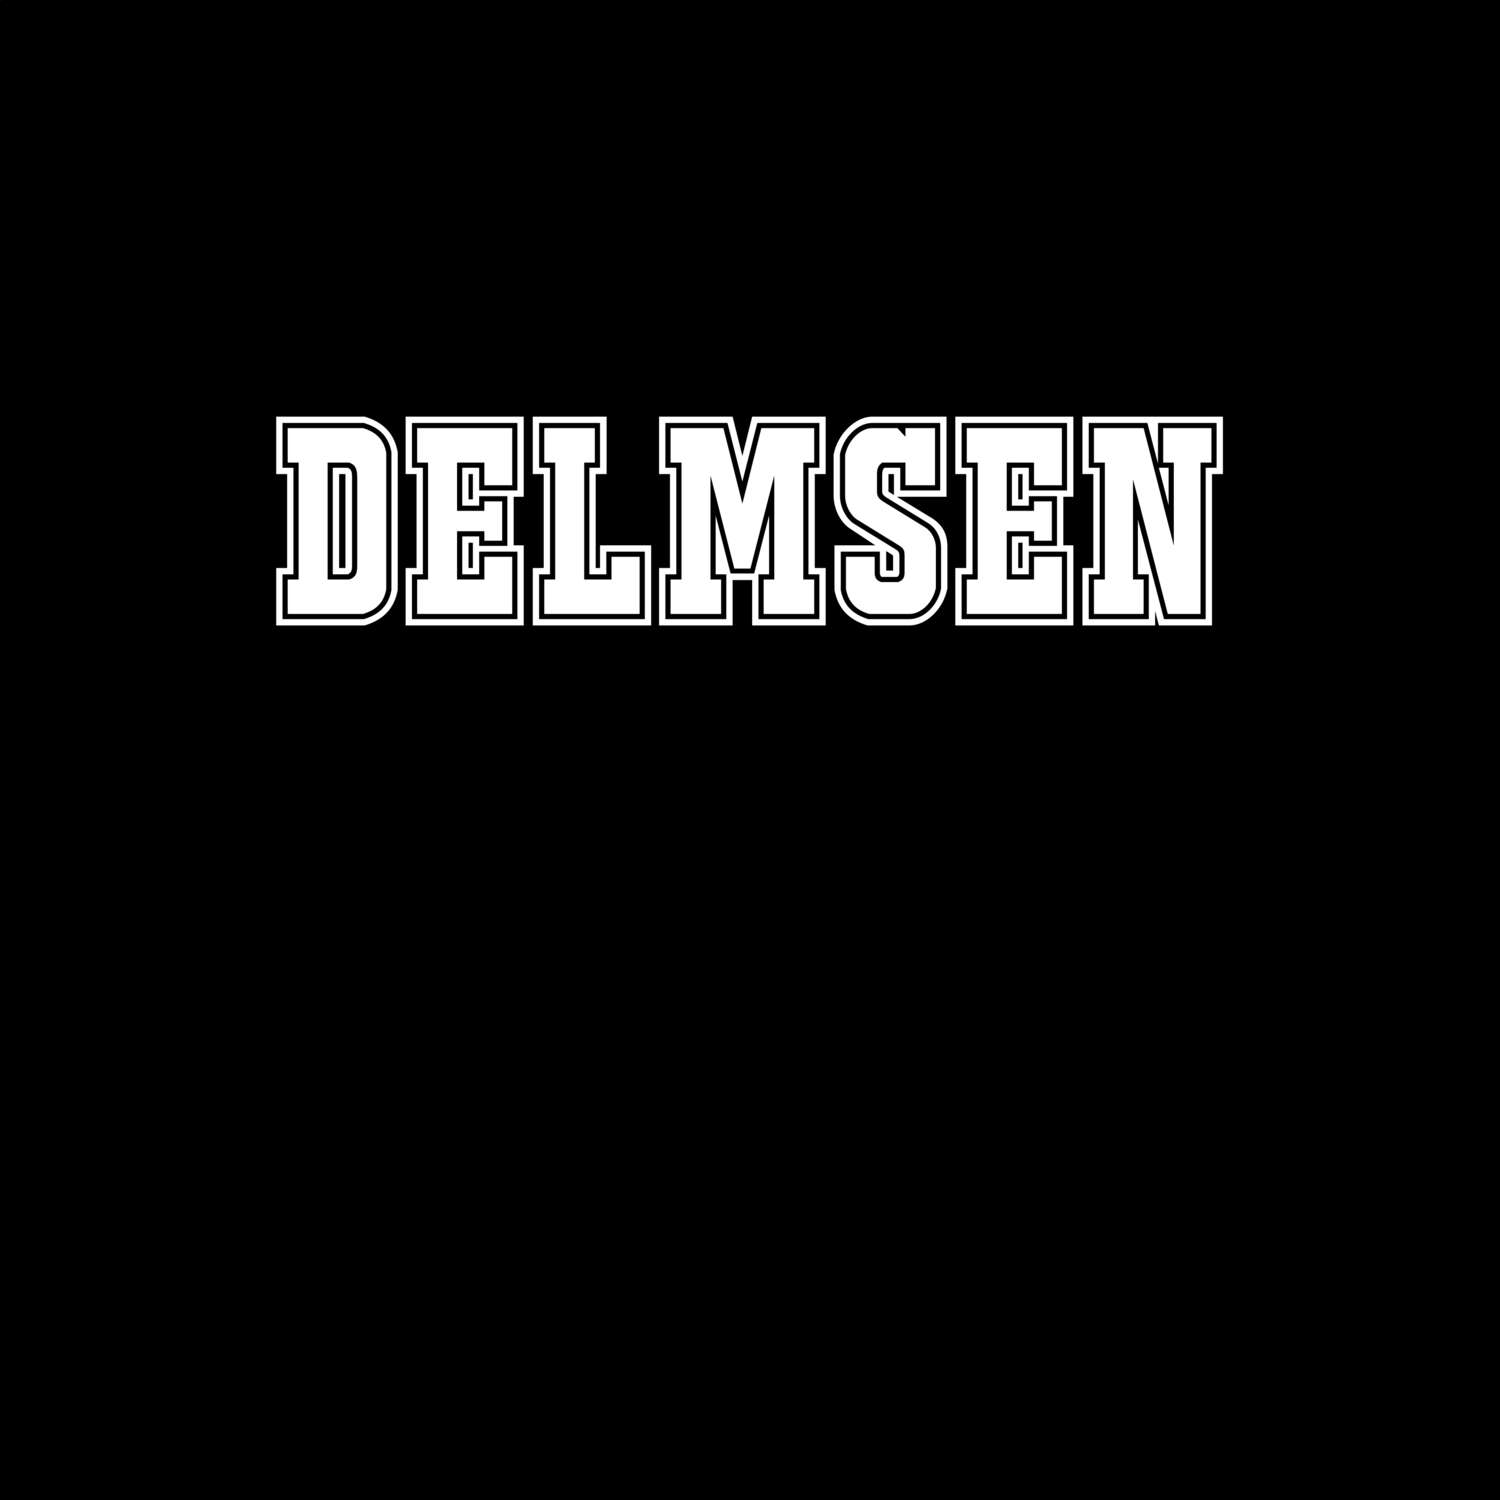 Delmsen T-Shirt »Classic«